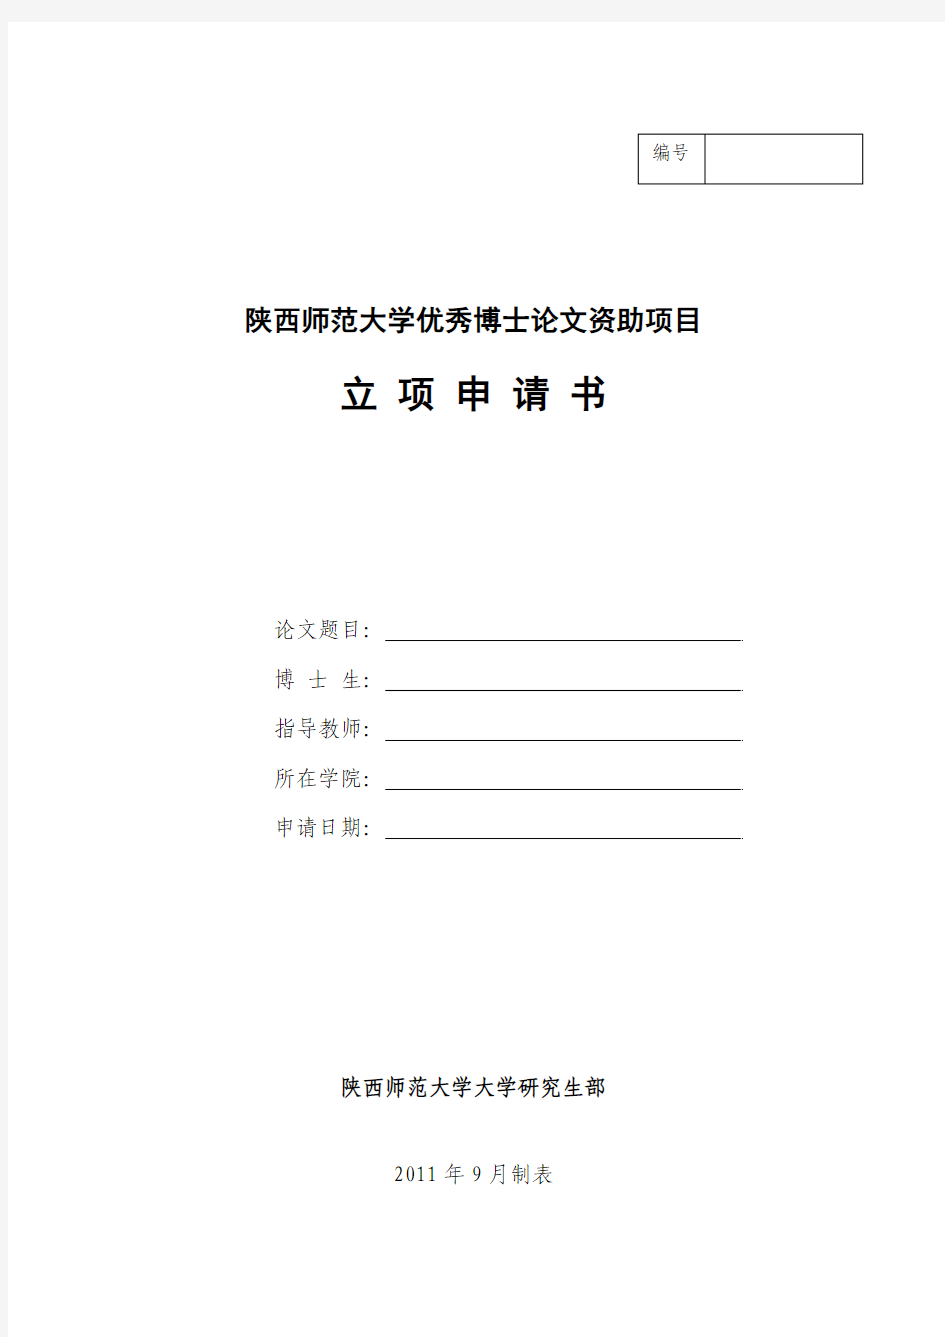 陕西师范大学优秀博士论文资助项目立项申请书(申请立项填写)